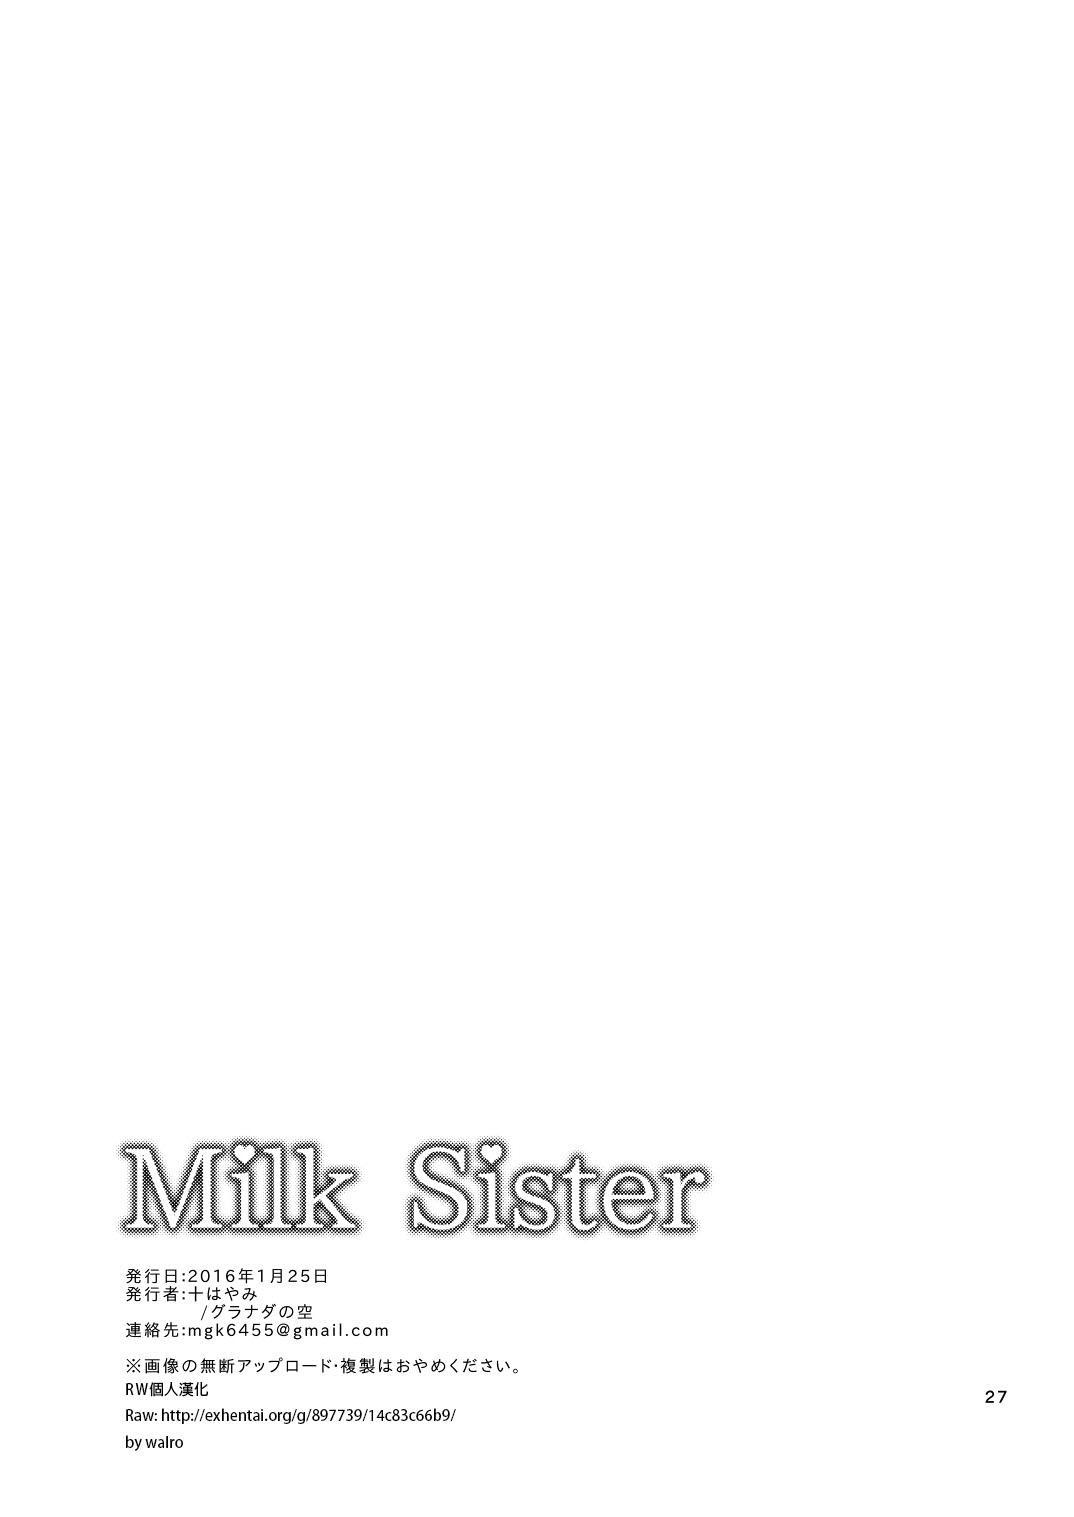 Milk Sister 26